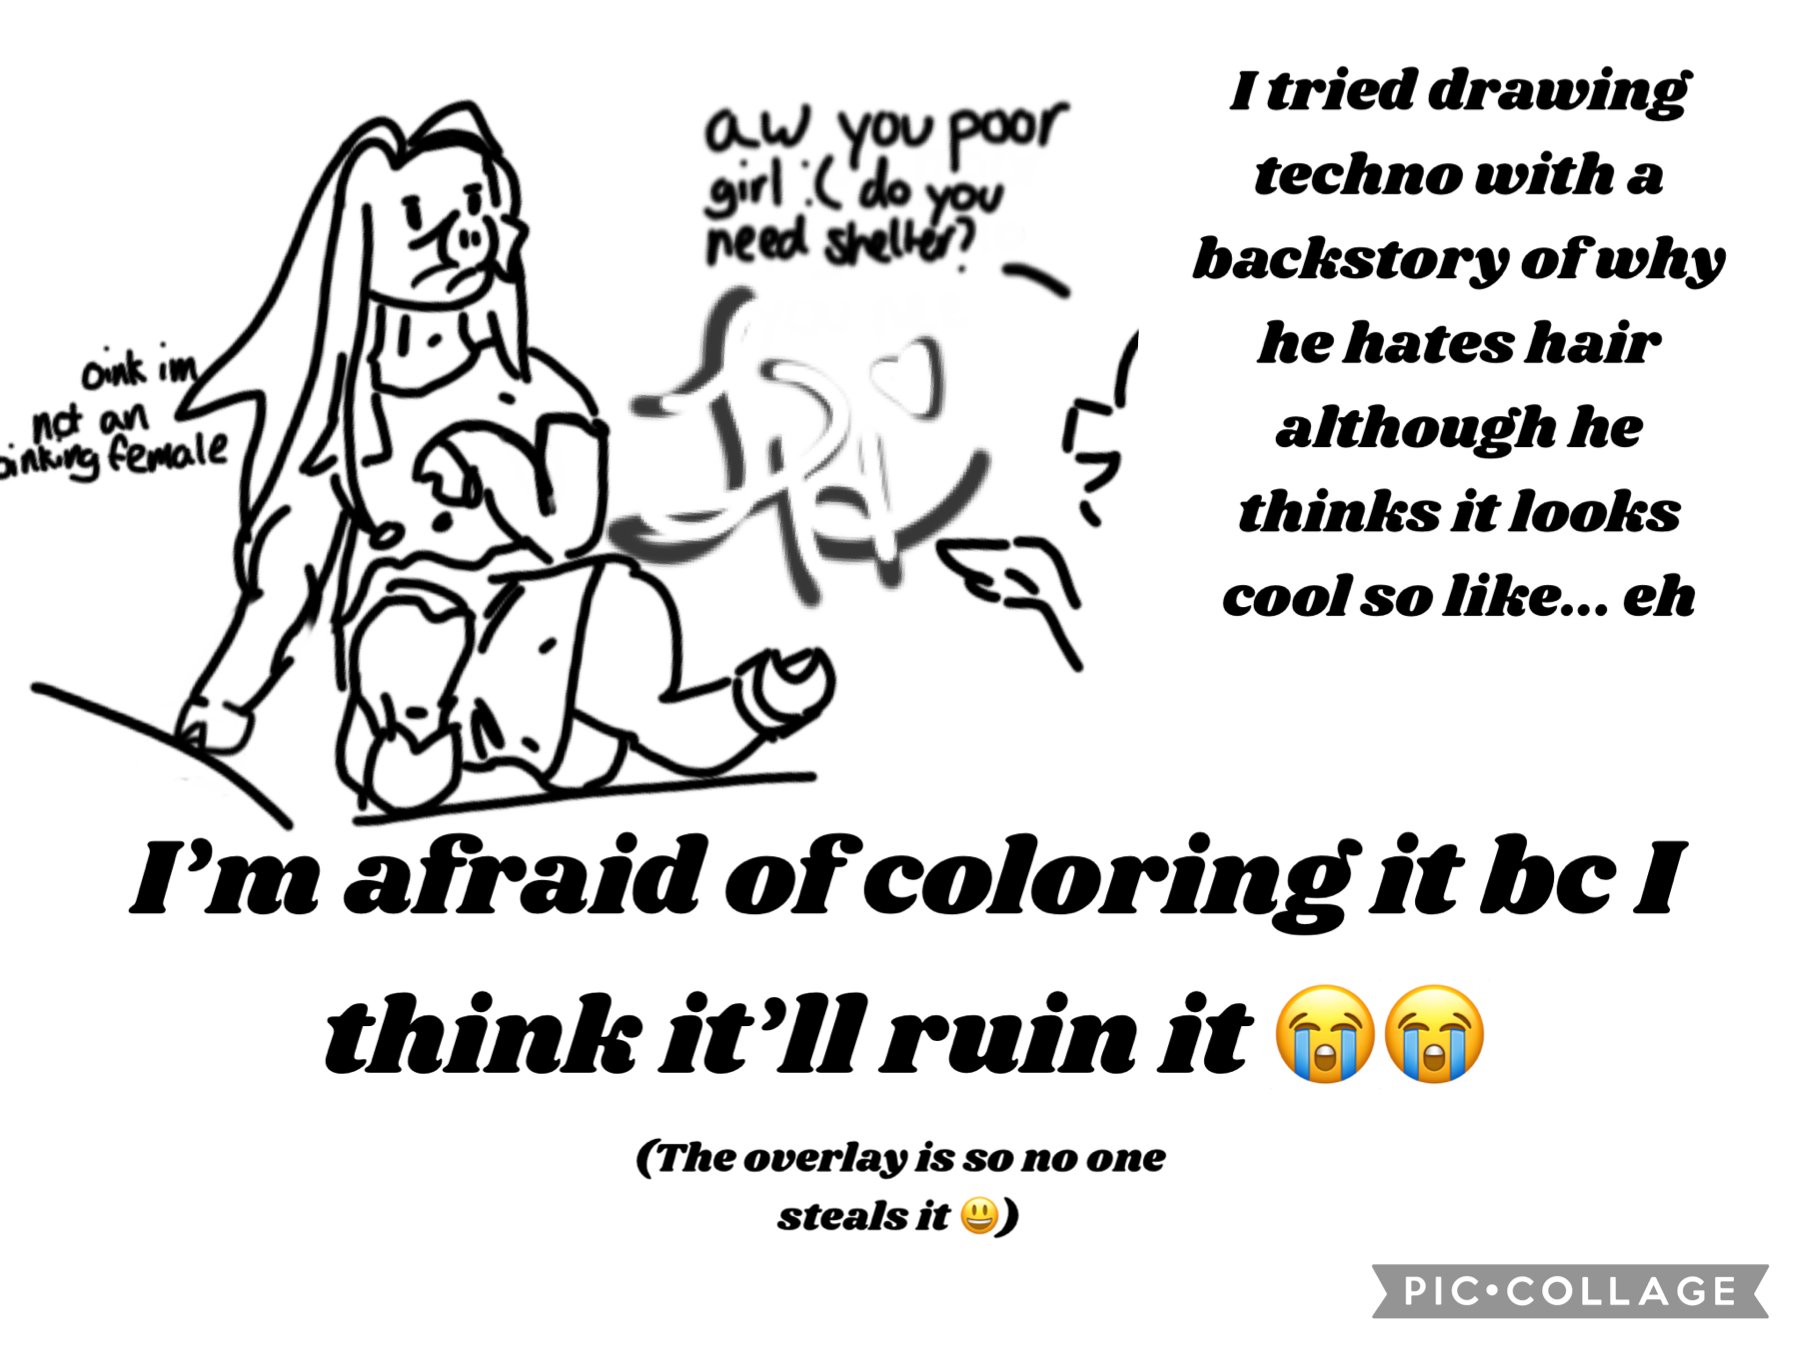 Ooh yaaaa I can’t draw 😃